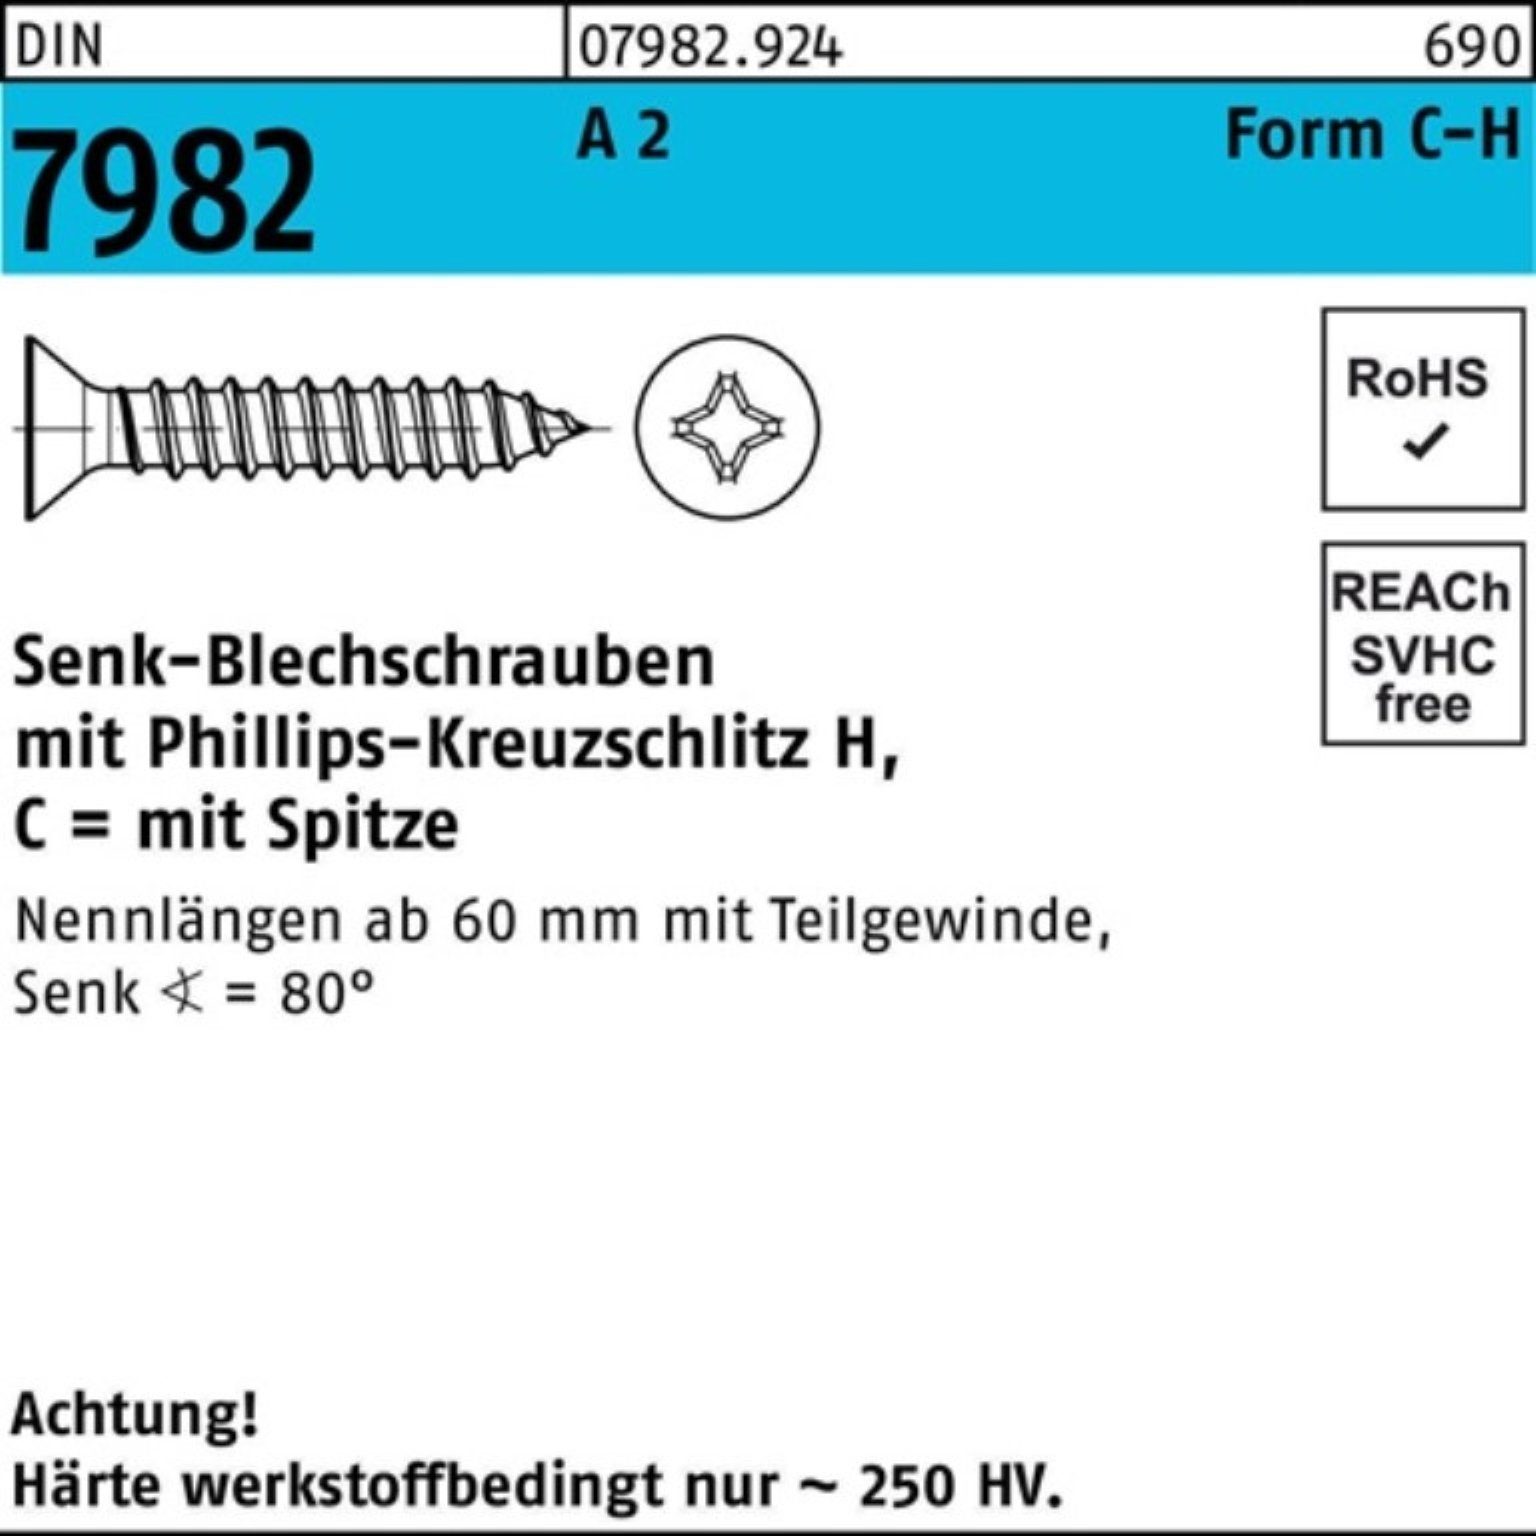 Reyher Schraube 100er Pack 3,5x 7982 2 A DIN C 100 9,5-H S PH/Spitze Senkblechschraube